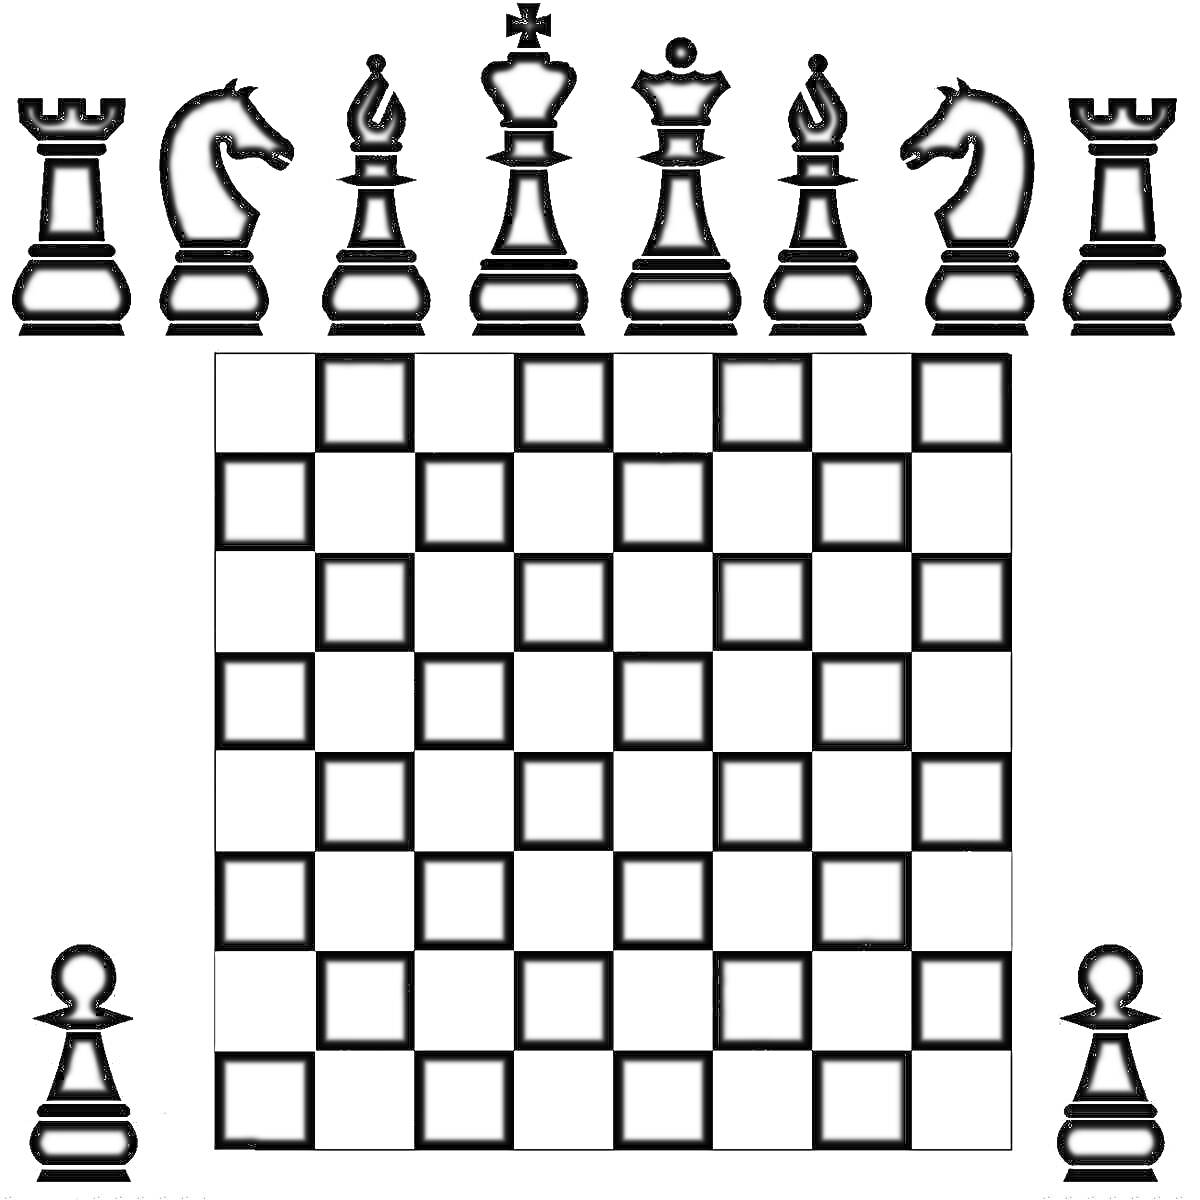 Раскраска Шахматная доска с фигурами: ладья, конь, слон, ферзь, король, пешка